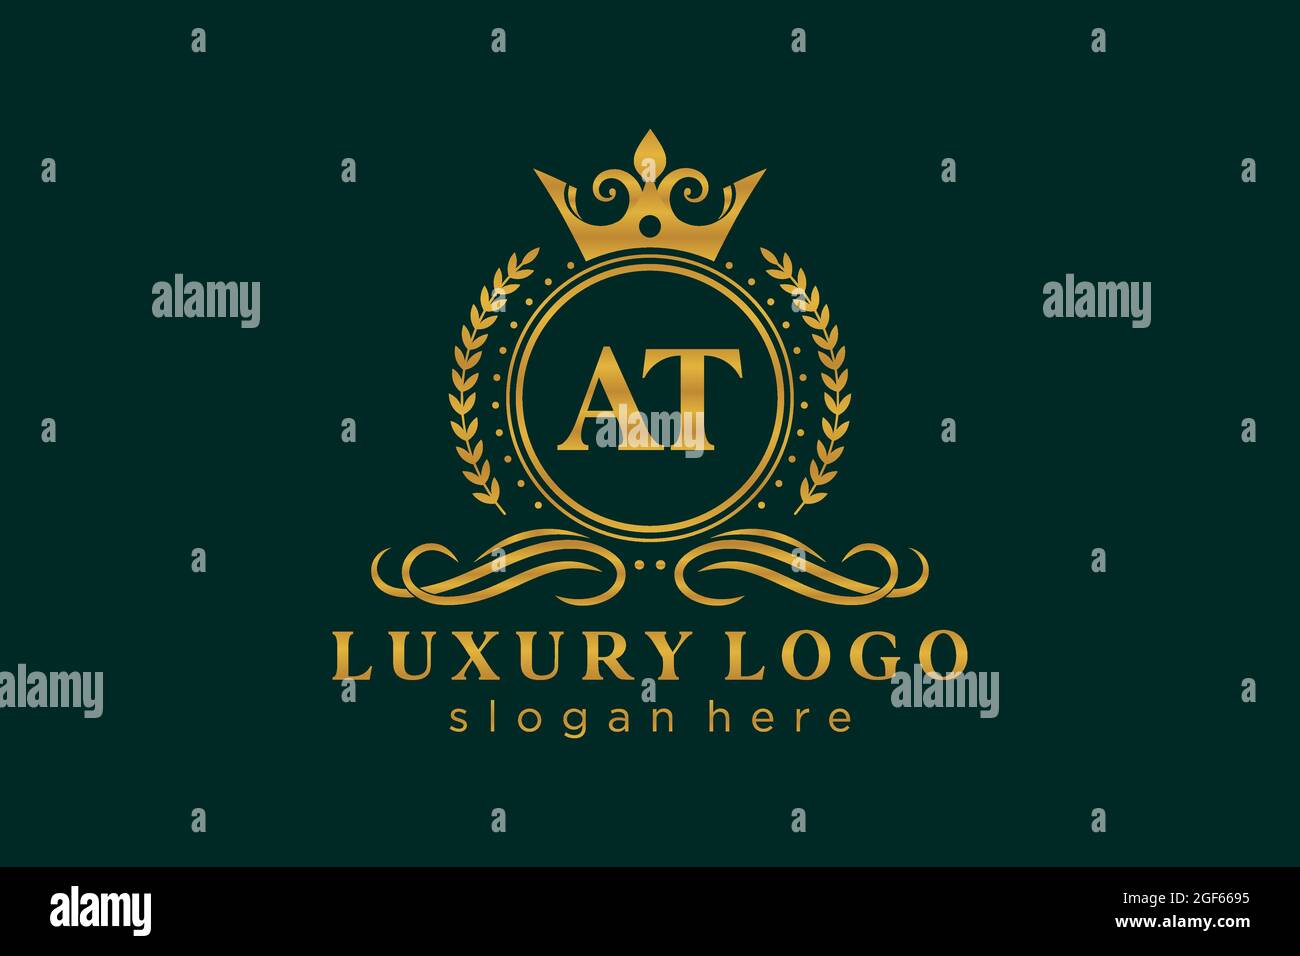 AT Letter Royal Luxury Logo Vorlage in Vektorgrafik für Restaurant, Royalty, Boutique, Cafe, Hotel, Heraldisch, Schmuck, Mode und andere Vektor illustrr Stock Vektor